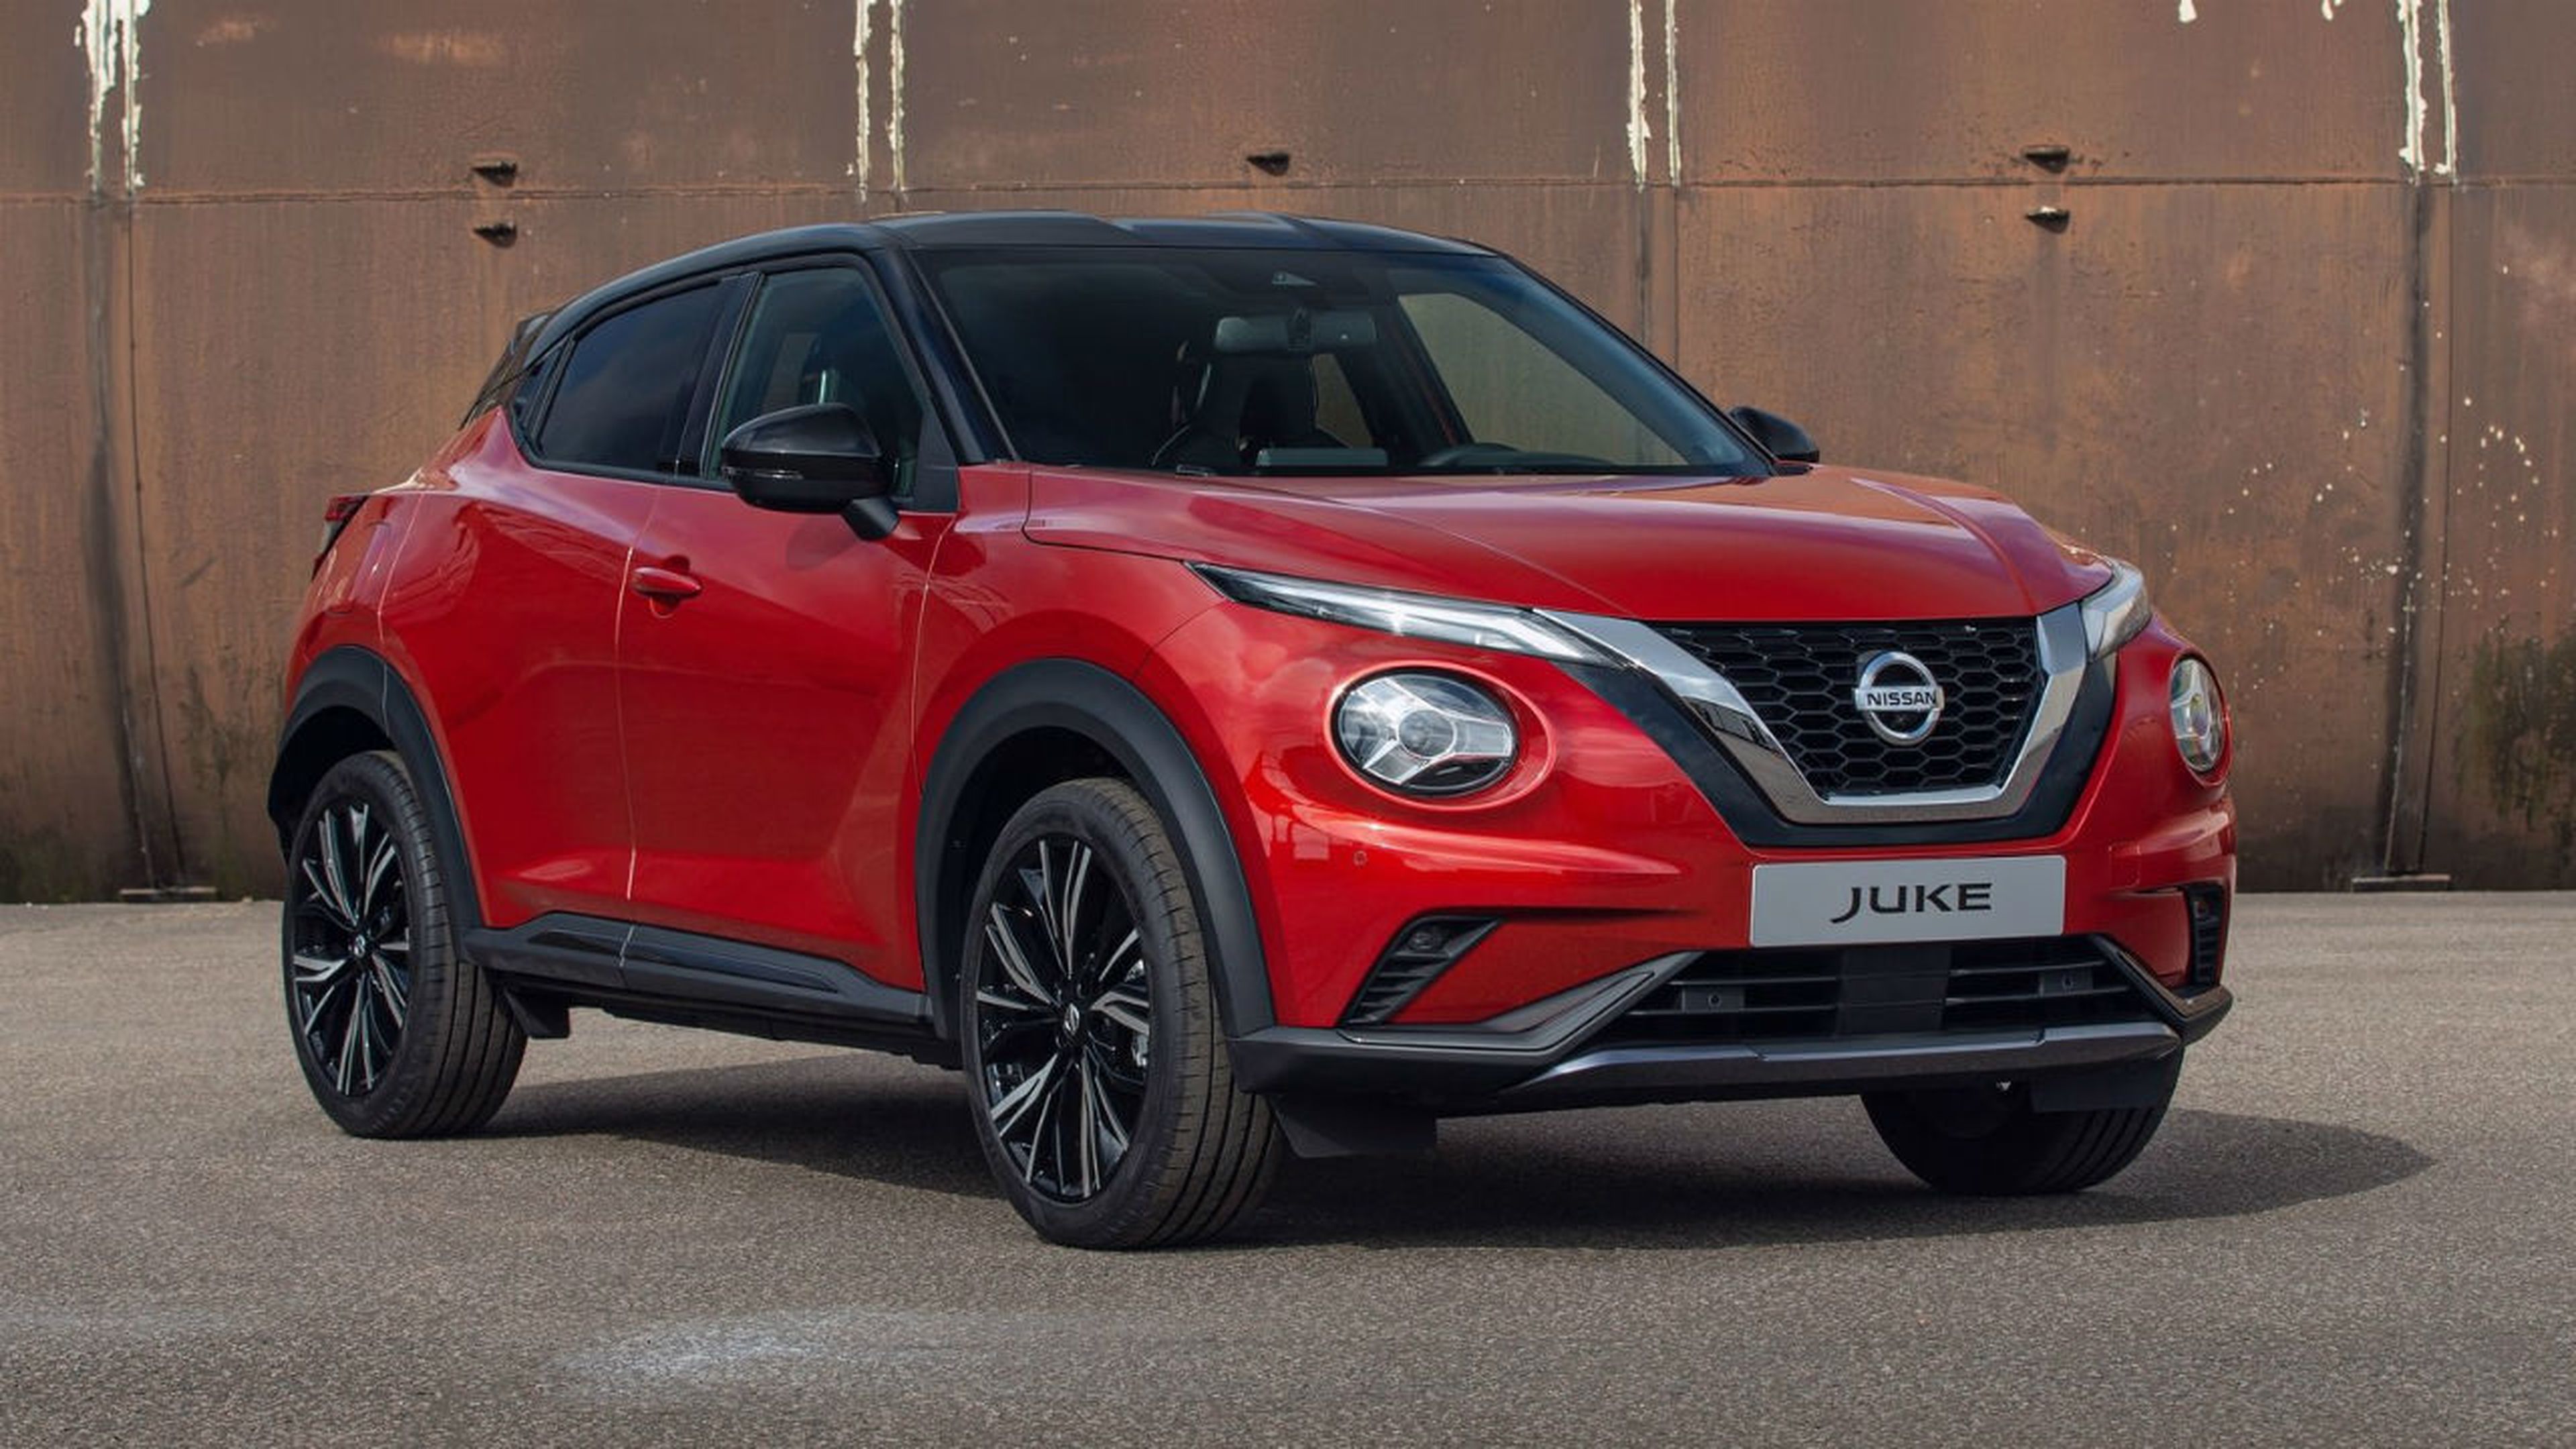 La segunda generación del Nissan Juke se ha hecho de rogar, pero la veremos al fin en el Salón de Frankfurt 2019.